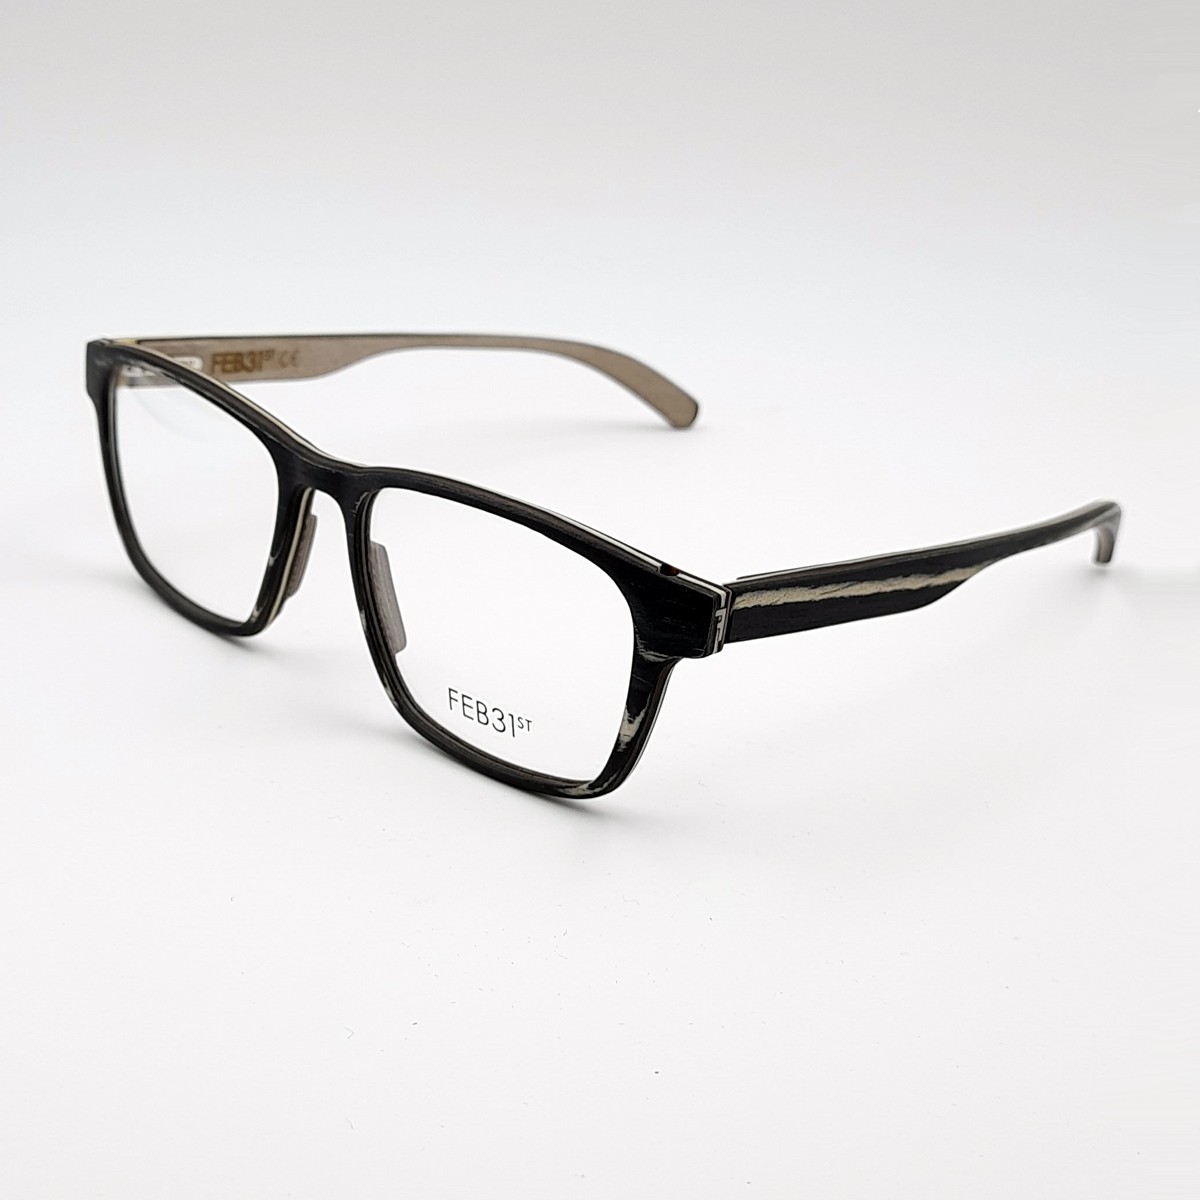 Feb31st Hugo | Men's eyeglasses